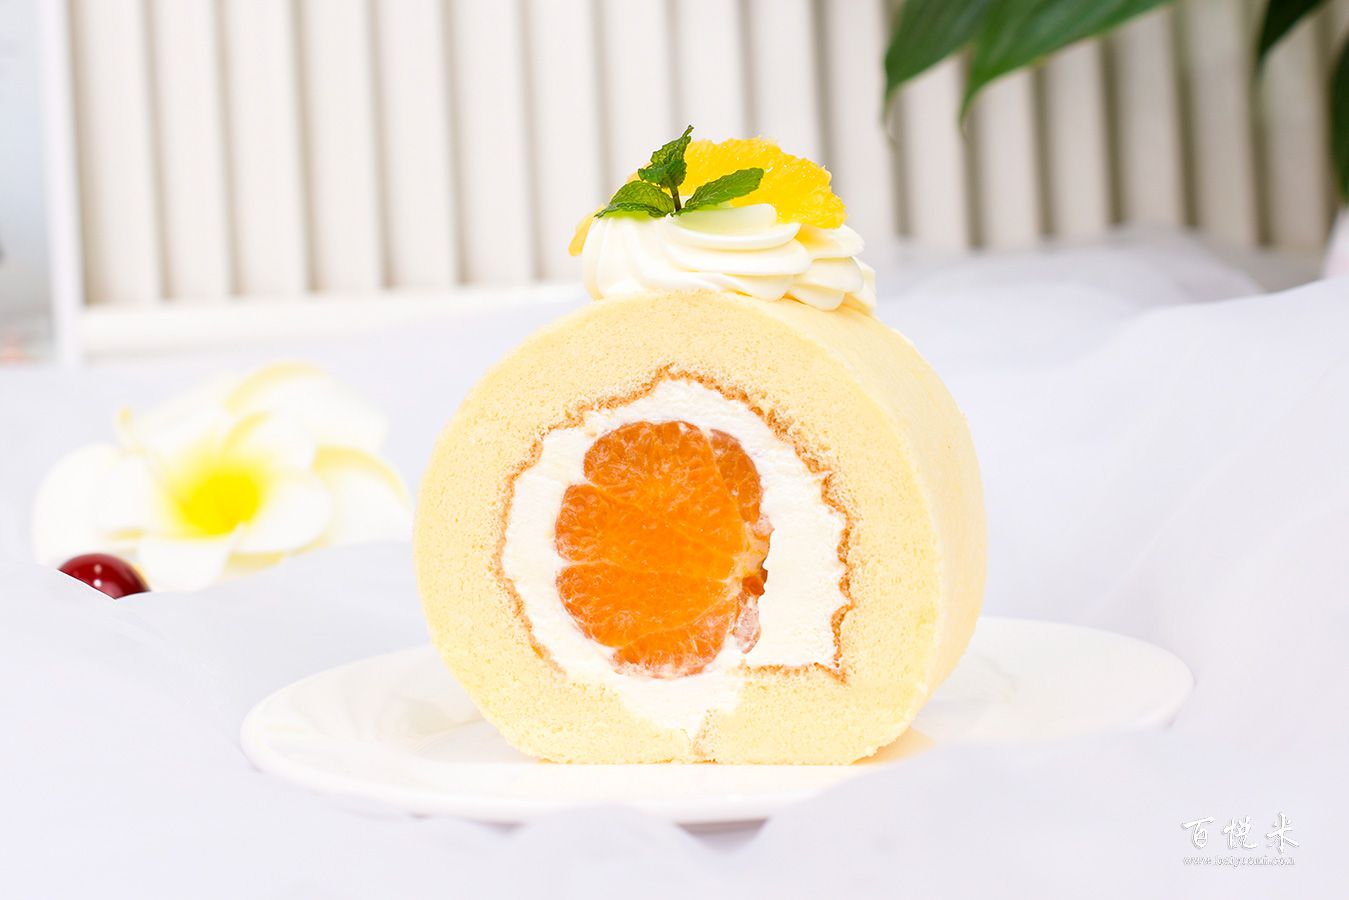 橘子卷蛋糕高清图片大全【蛋糕图片】_213